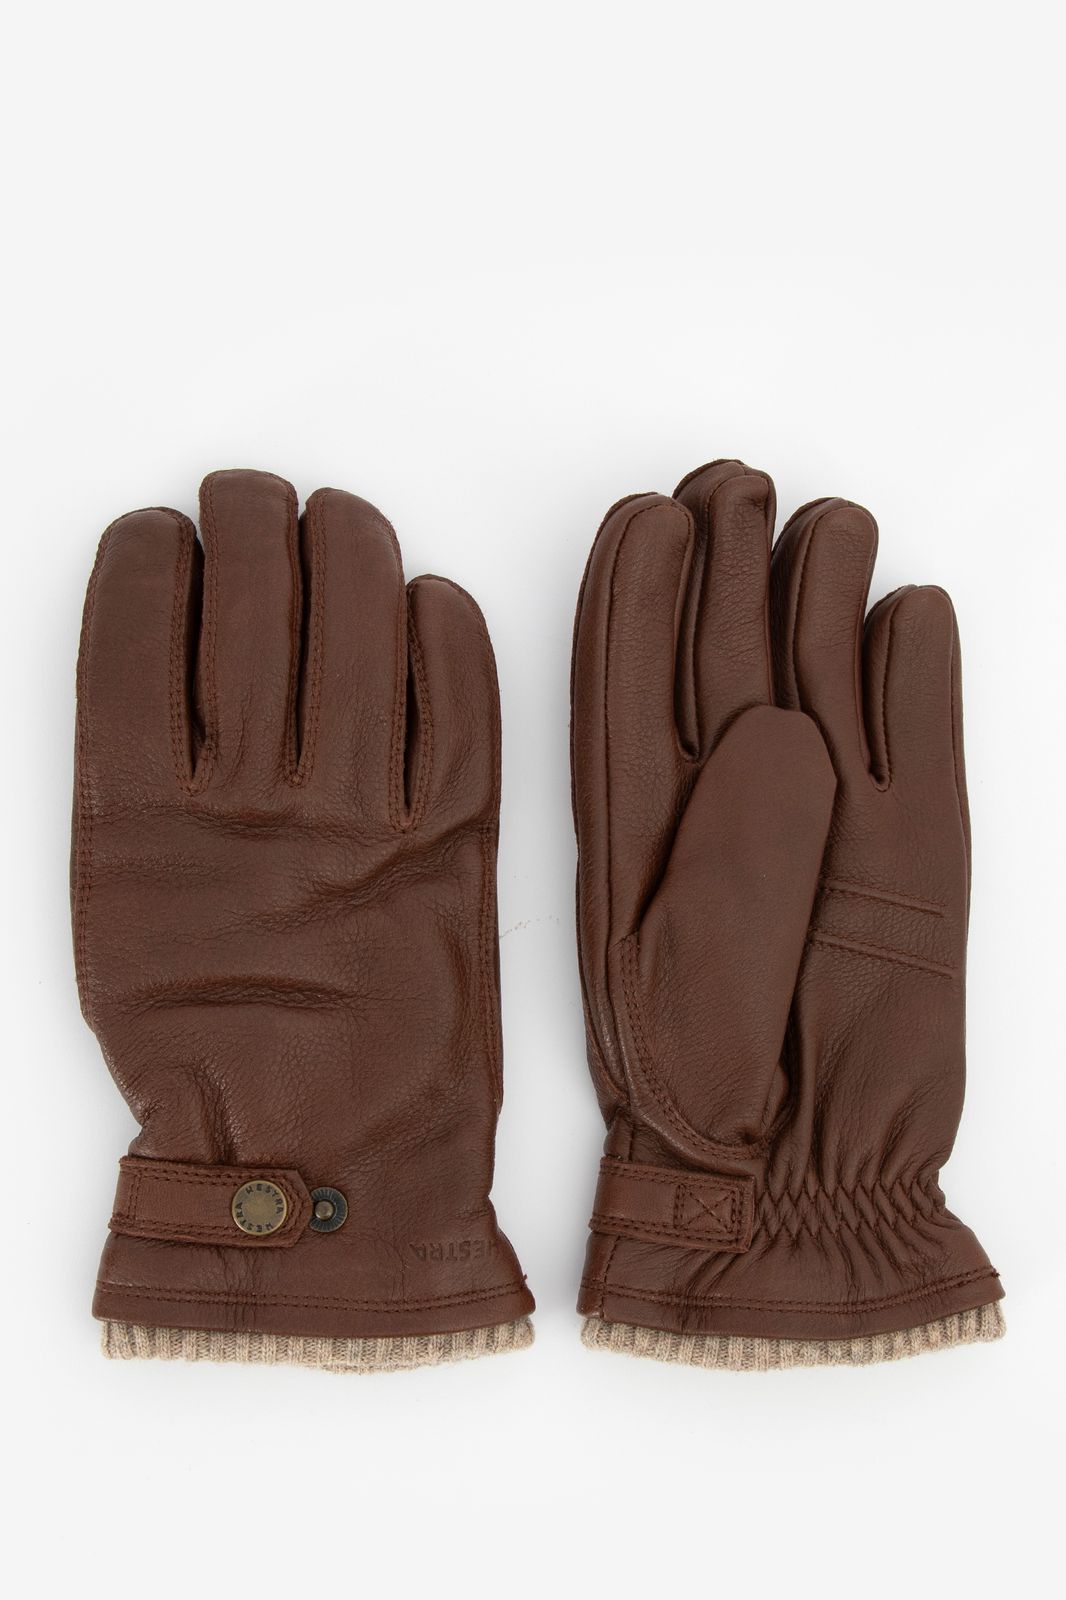 Wiskundige Makkelijk te gebeuren langzaam bruine handschoenen, Brown gloves – Bottines - finnexia.fi